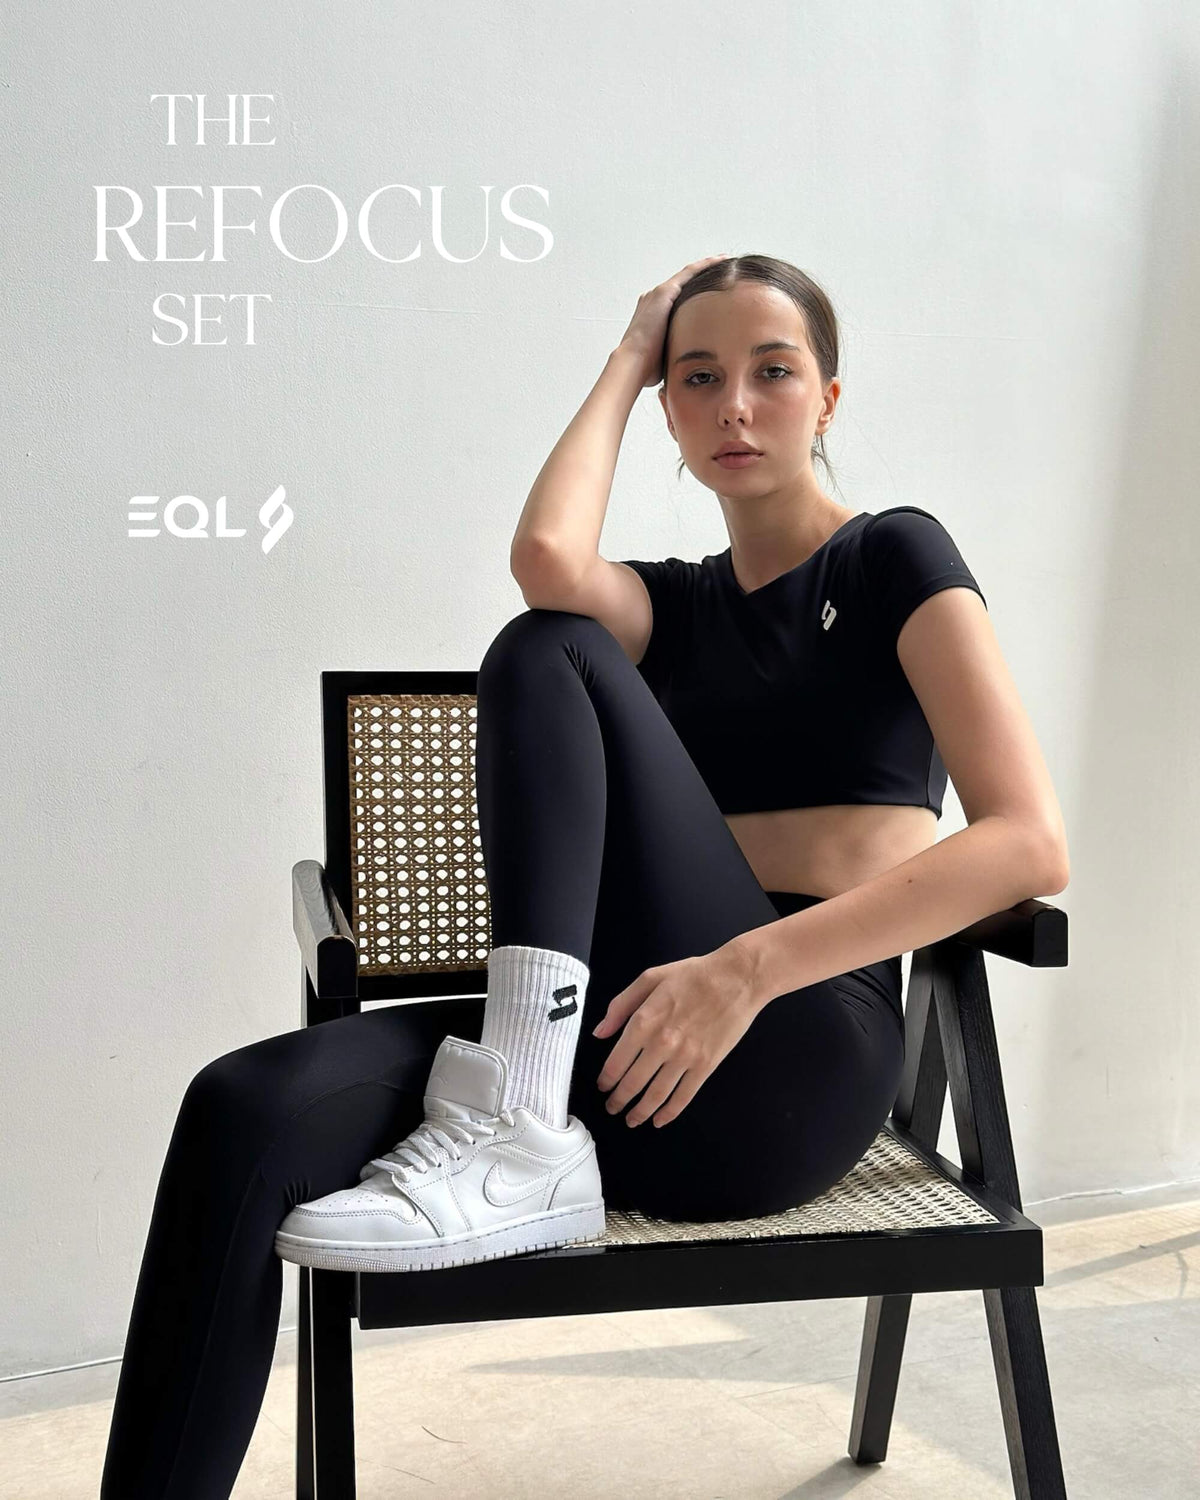 refocus set photo eql apparel